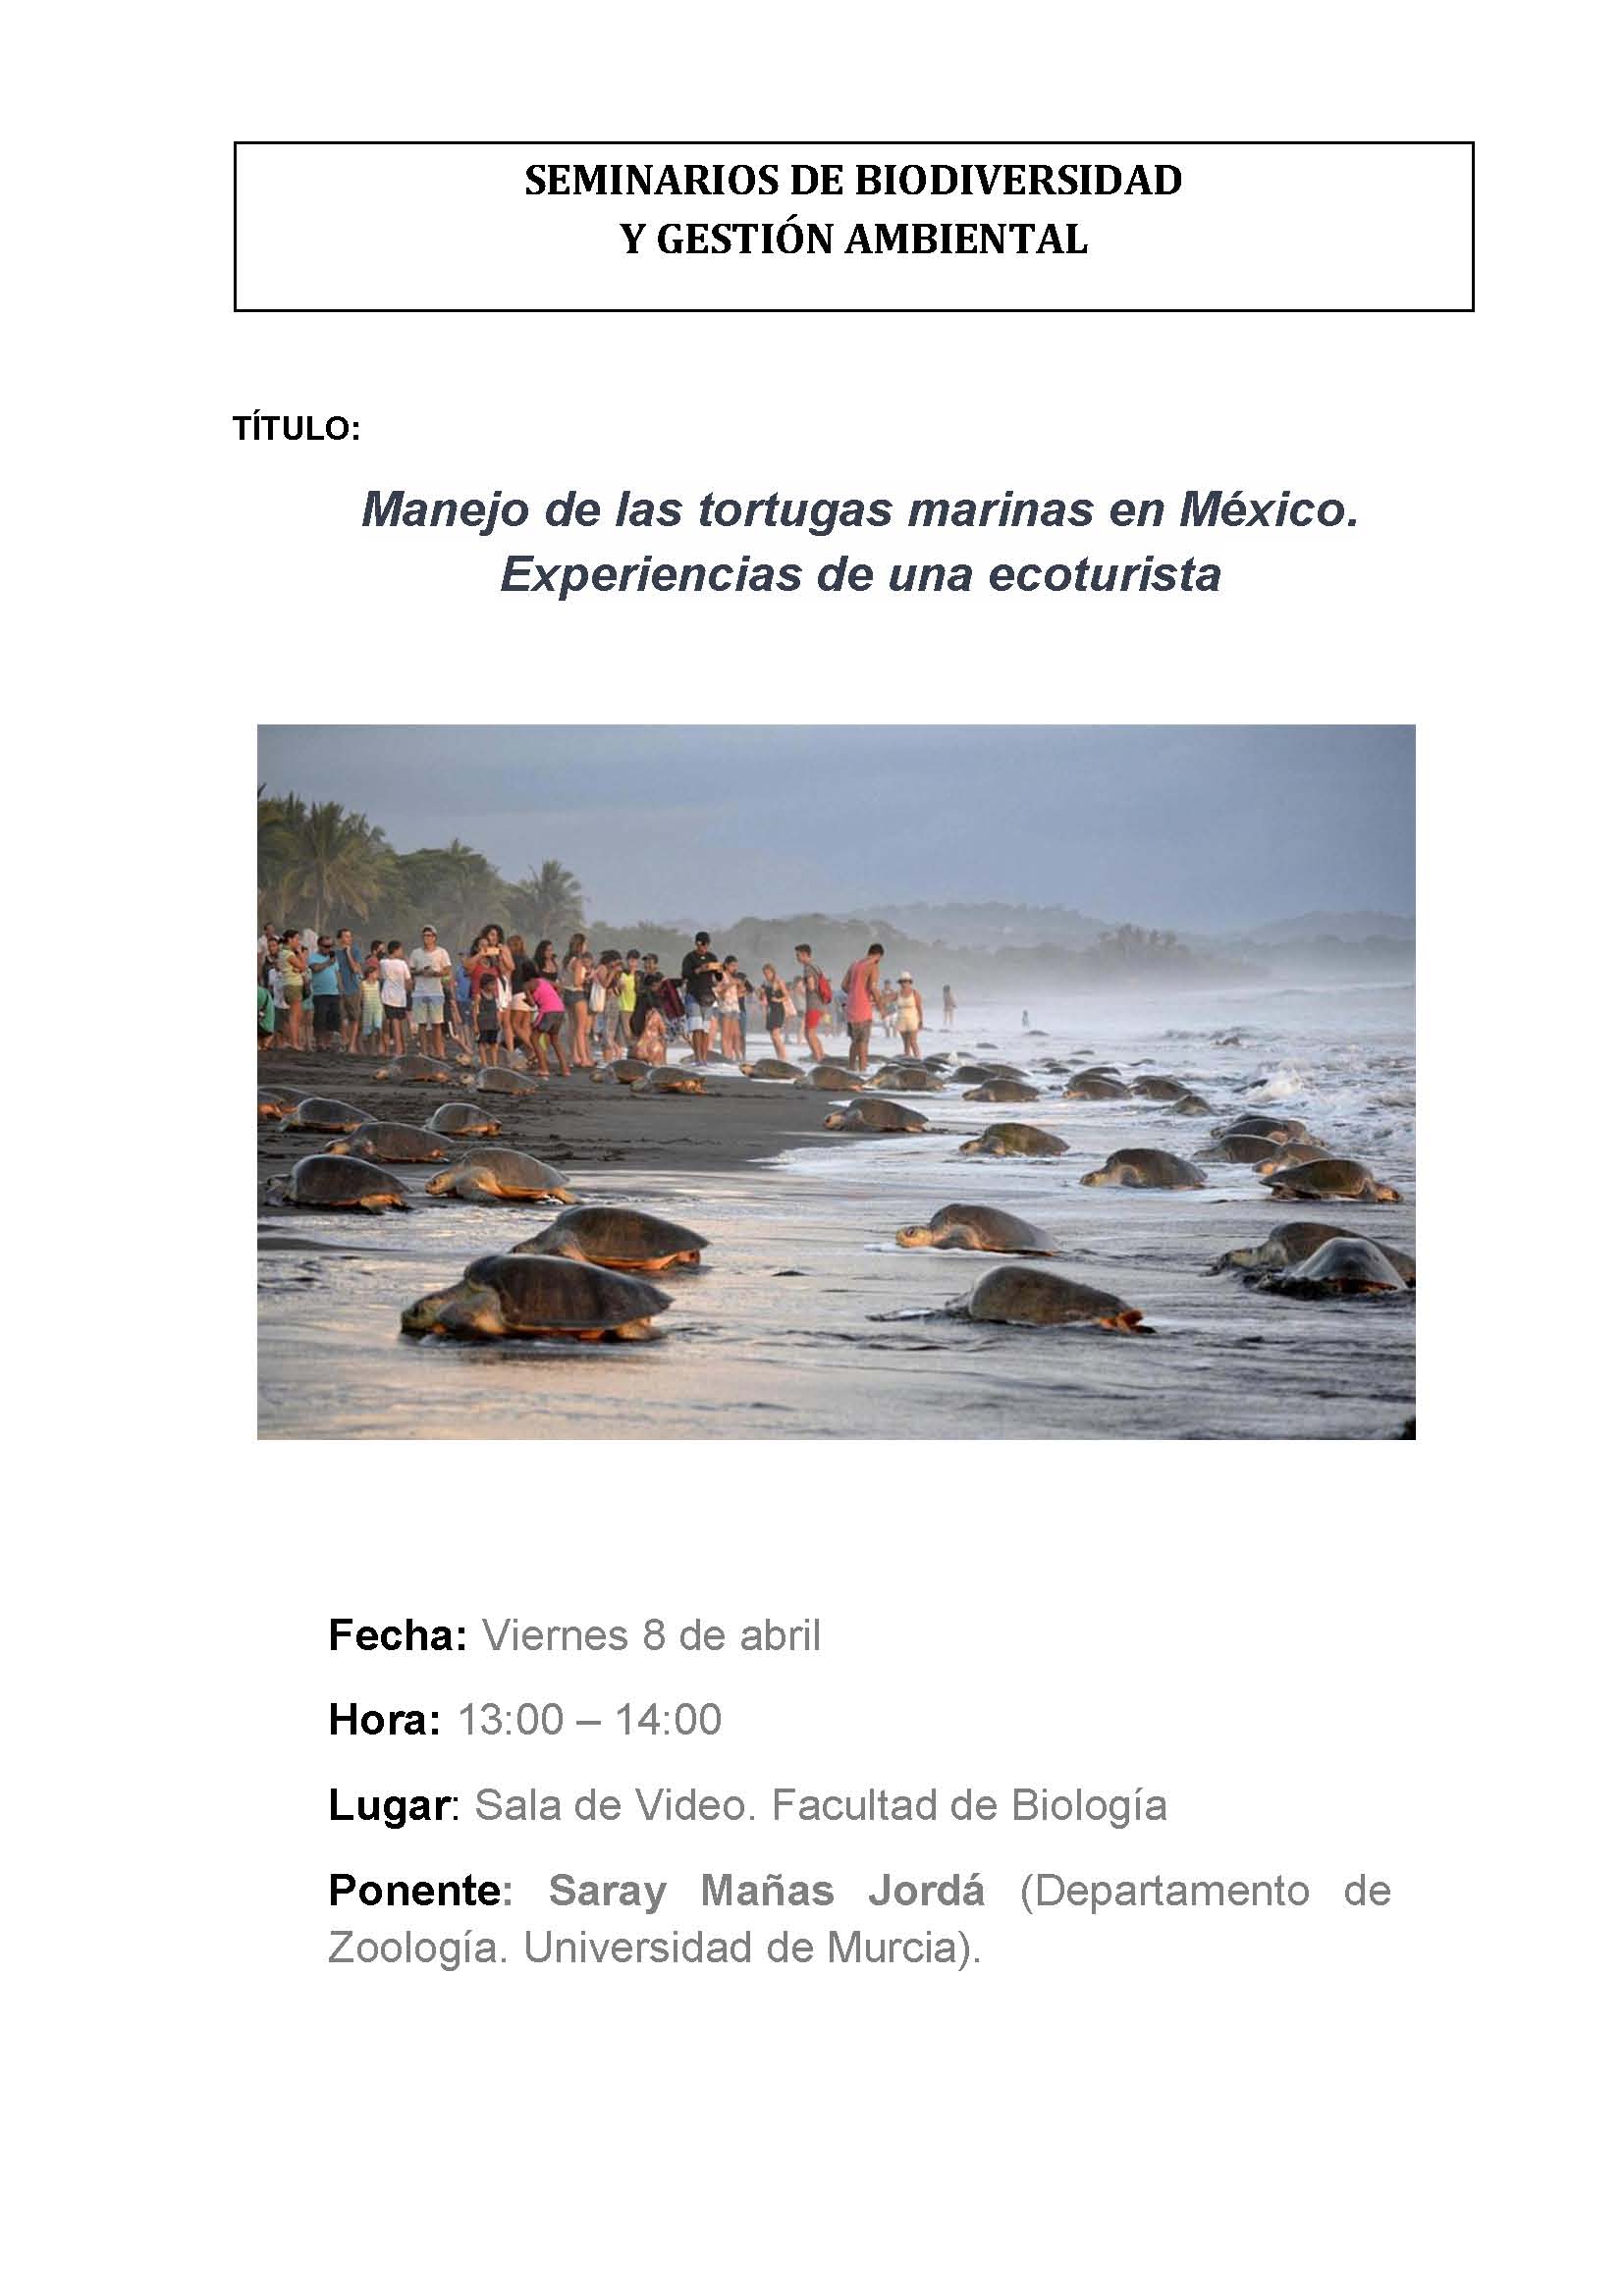 Charla sobre 'Manejo de las tortugas marinas en México', en la UMU.